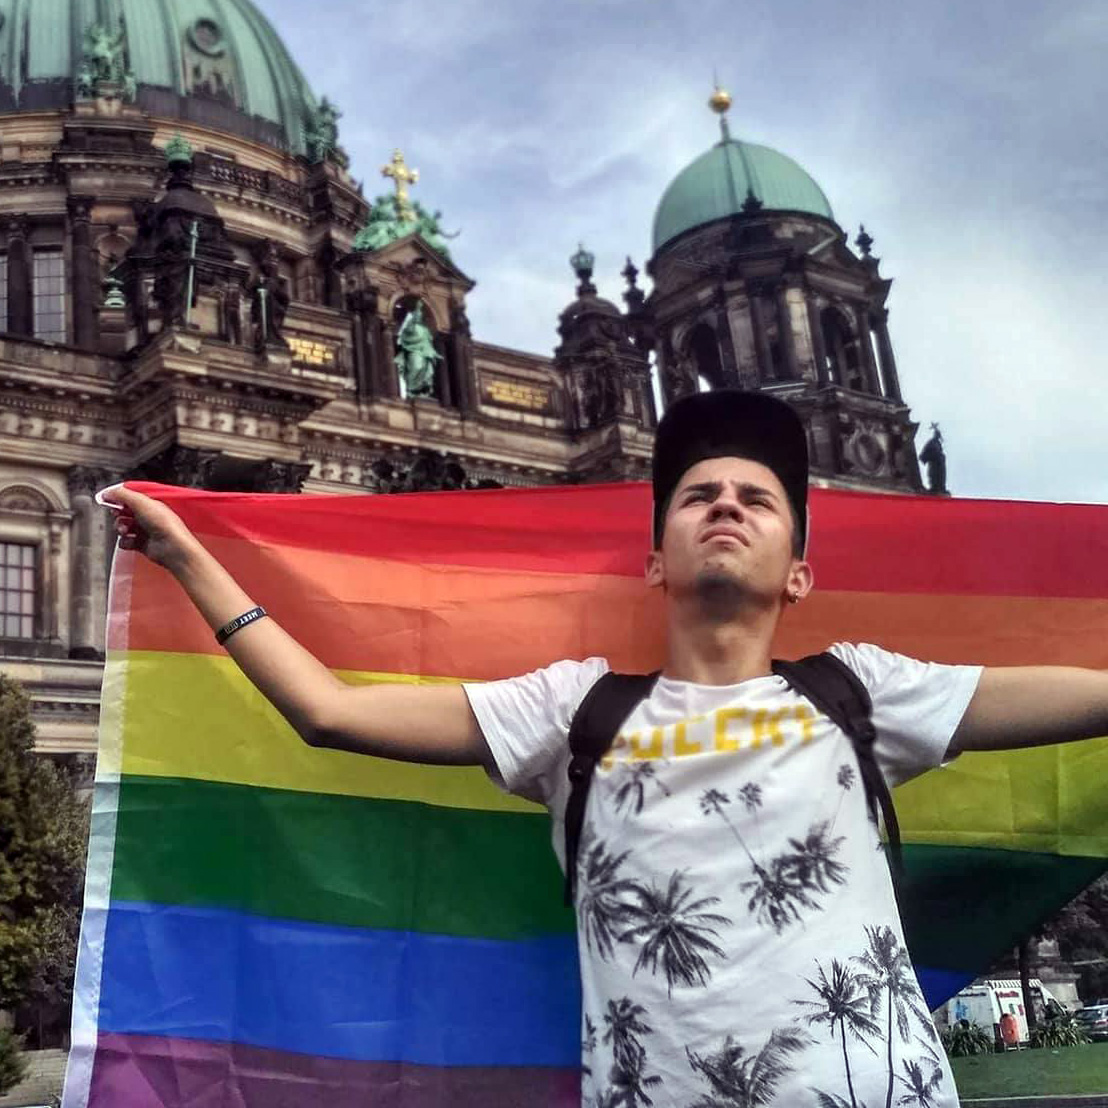 Ірина Суслова: «Закон про захист ЛГБТ не на часі»